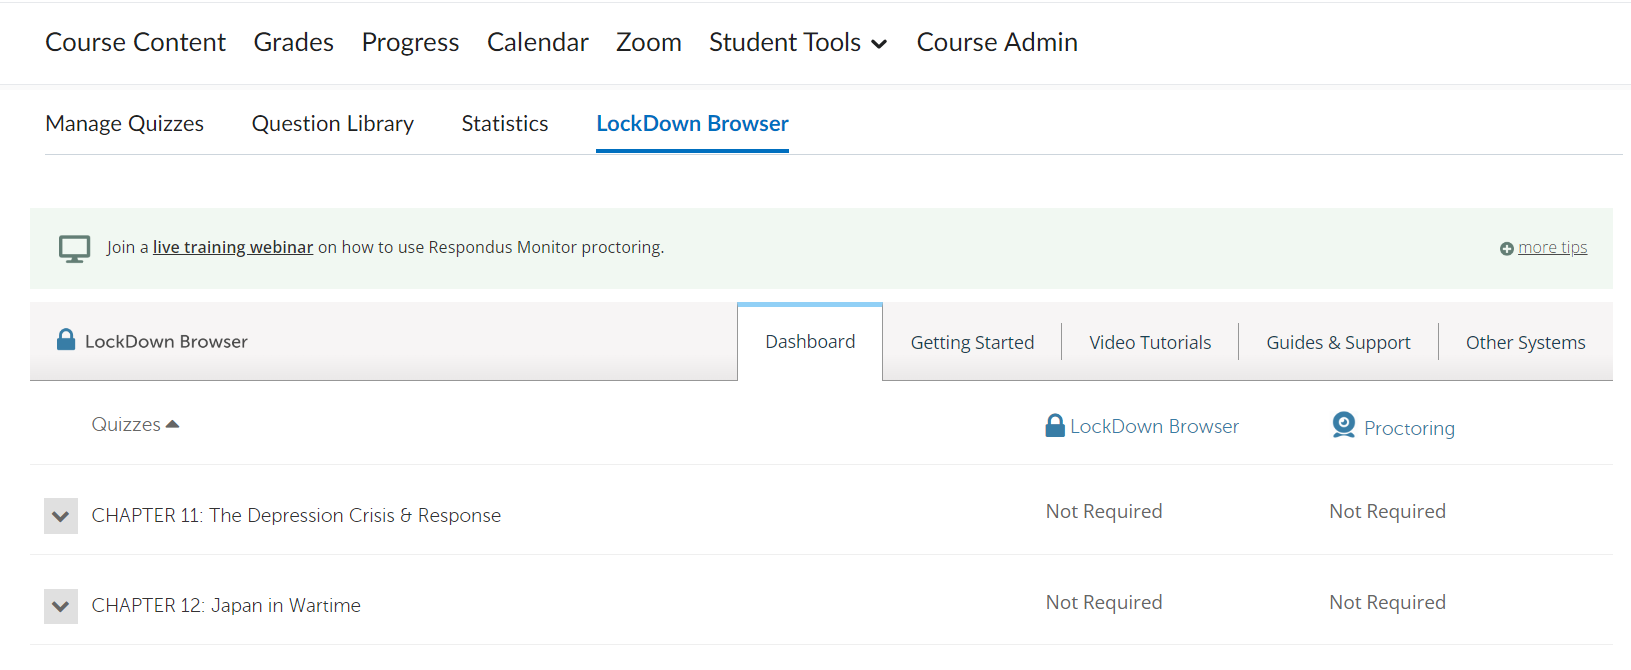 The Lockdown Browser main menu.